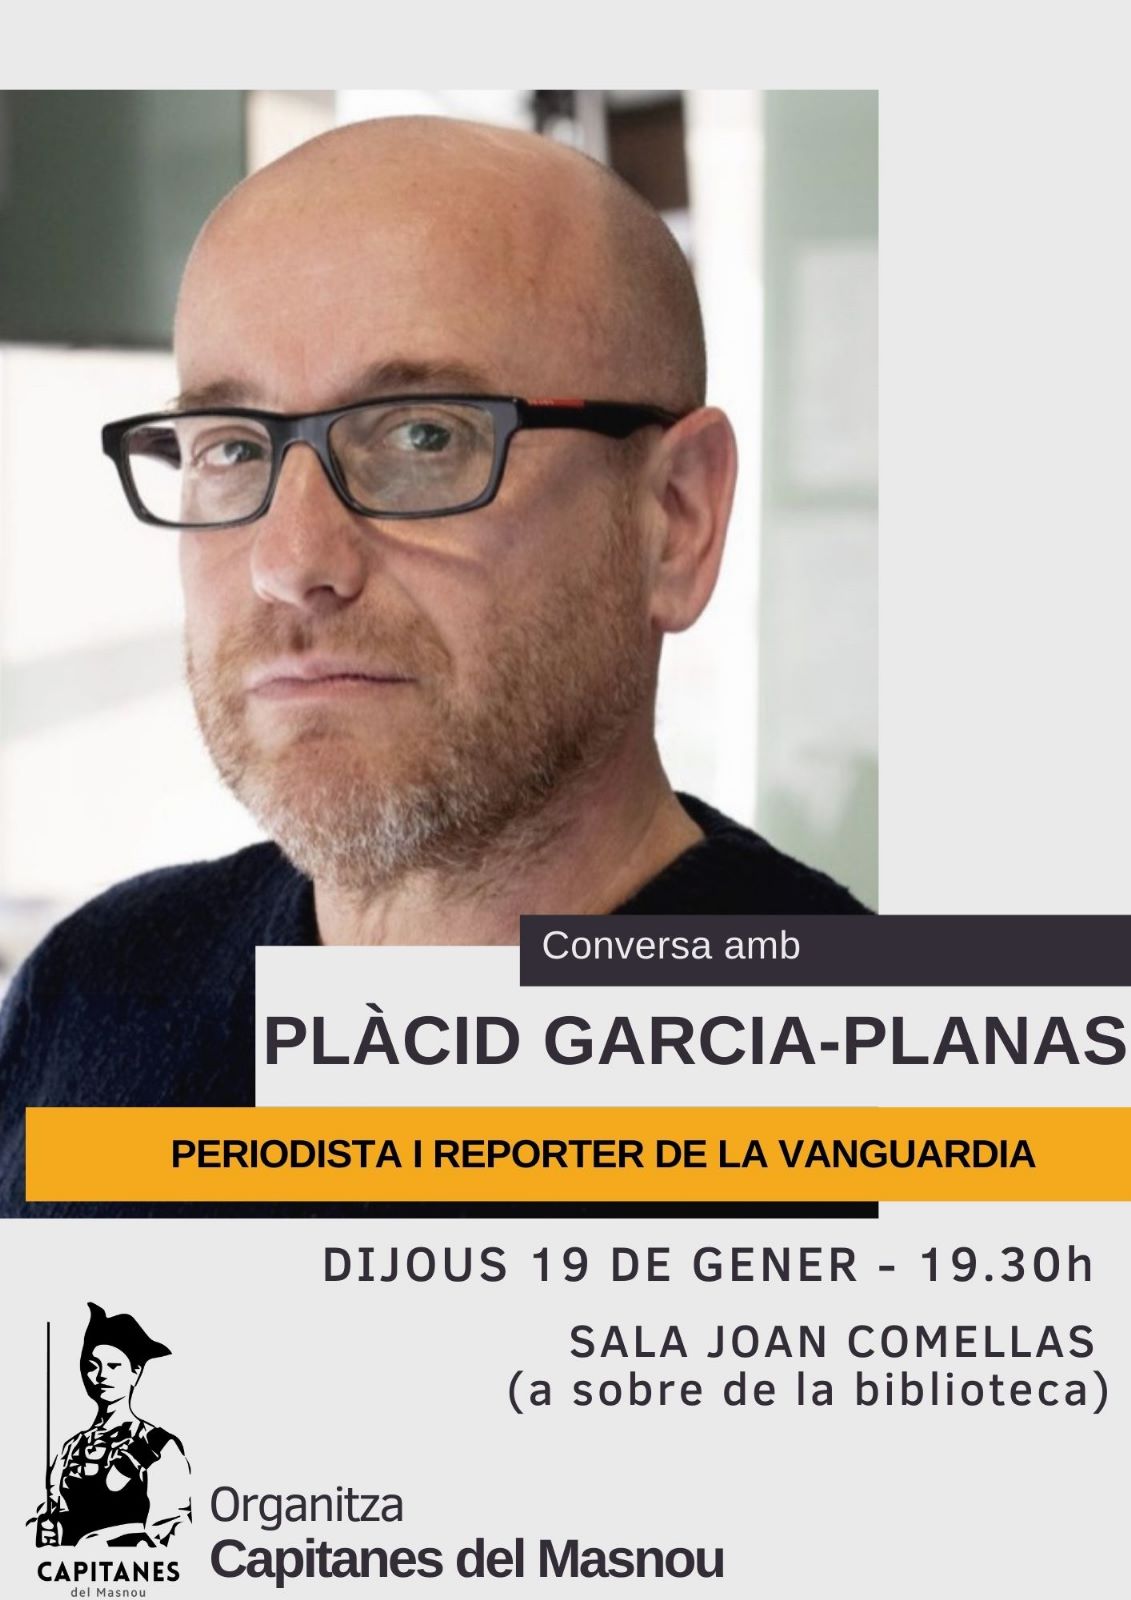 'Conversa amb Plàcid Garcia-Planas, periodista i reporter de la Vanguardia'